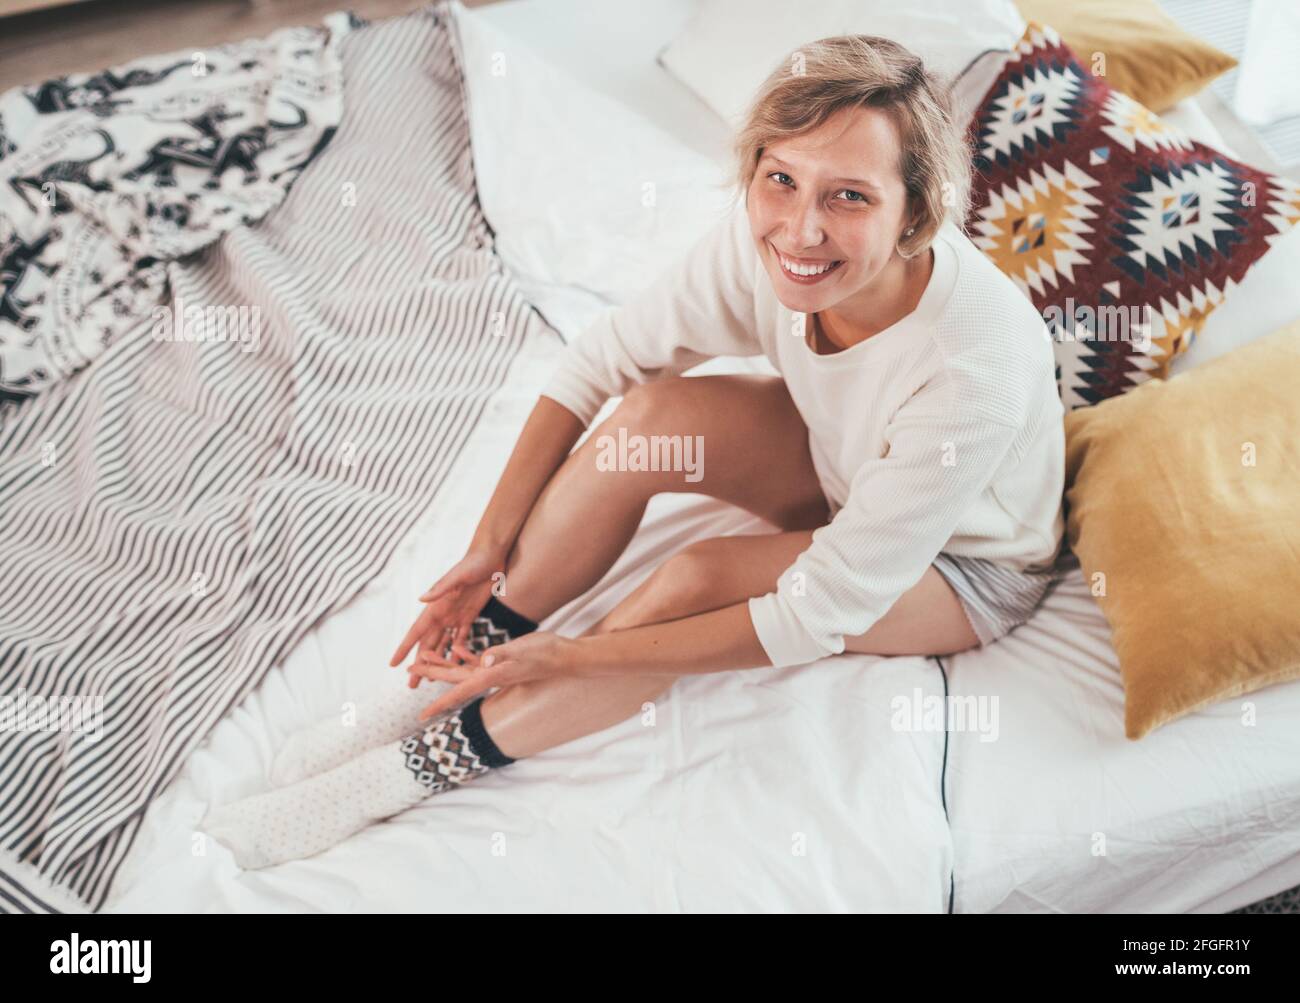 Junge blonde Frau in Pyjama gekleidet sitzen im gemütlichen Bett mit Kissen und aufrichtig lächelnd und Blick auf die Kamera. Wohnen zu Hause und süß gemütlich Stockfoto